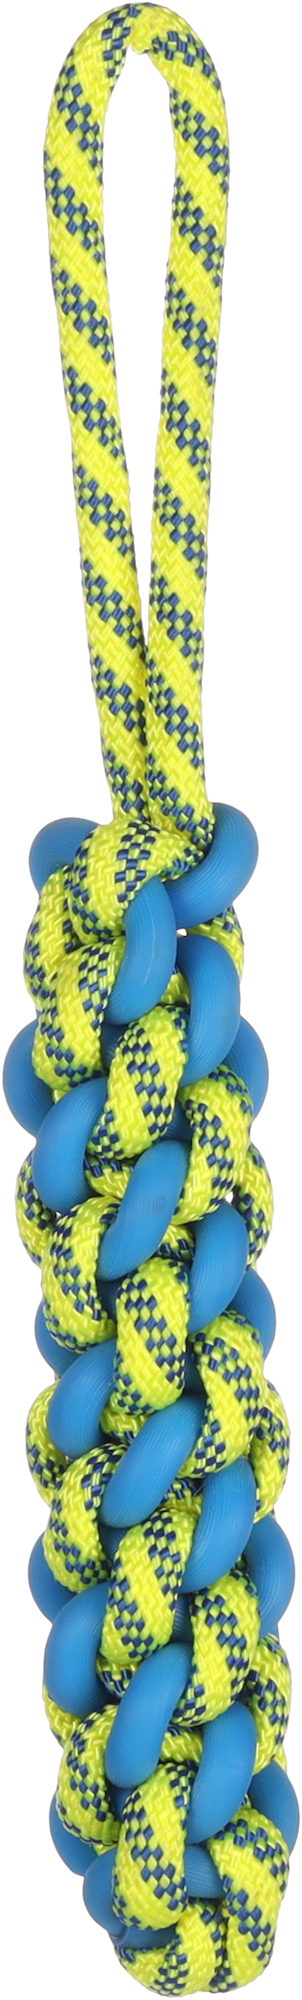 Giocattolo da tirare per cani Tofla blu/giallo in gomma e nylon resistente